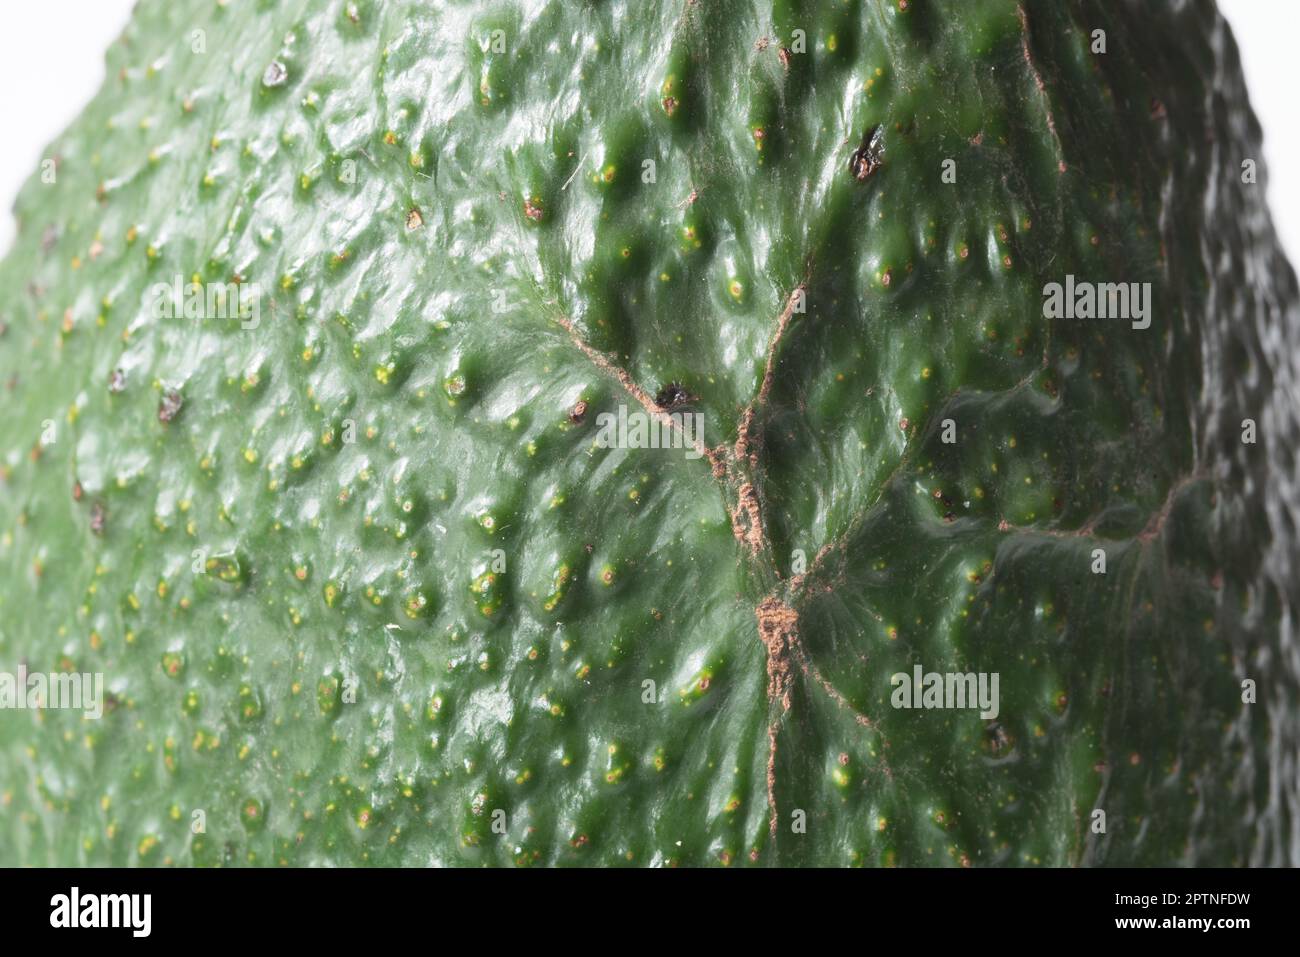 texture creata con la buccia di avocado, il dettaglio dell'avocado, un bel frutto verde Stock Photo